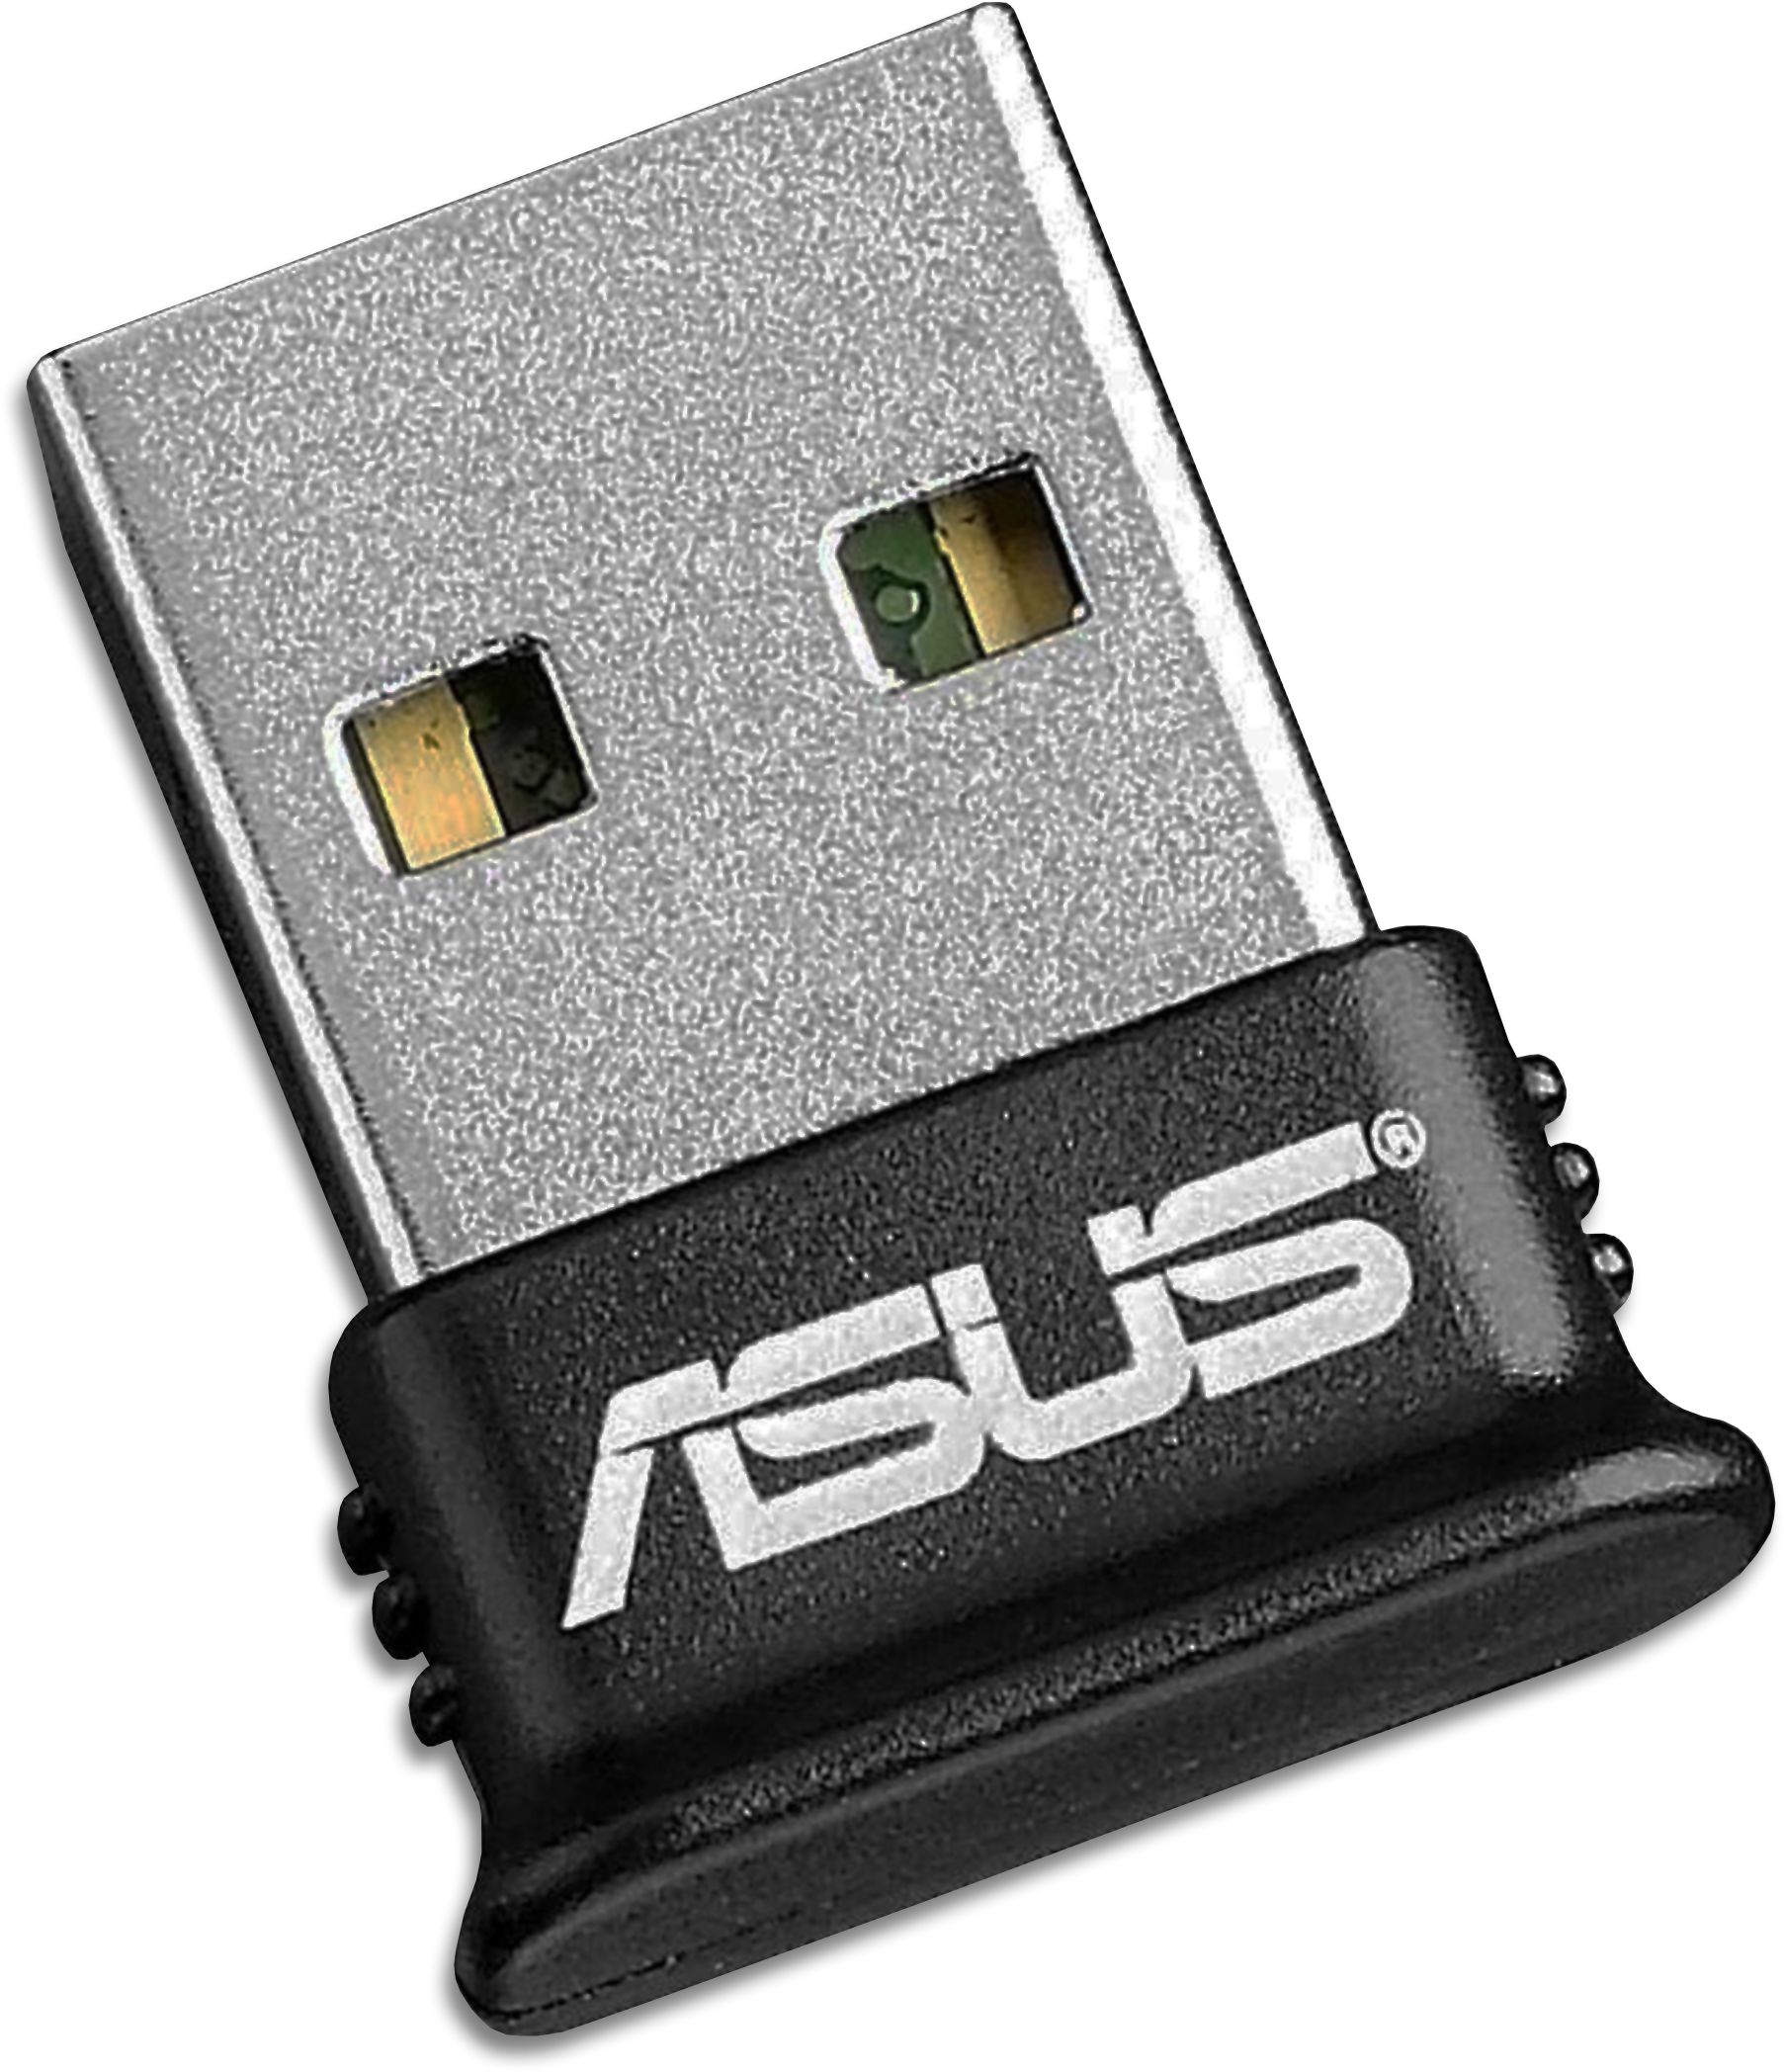 Bluetooth 4.0 Nano Size USB Adapter